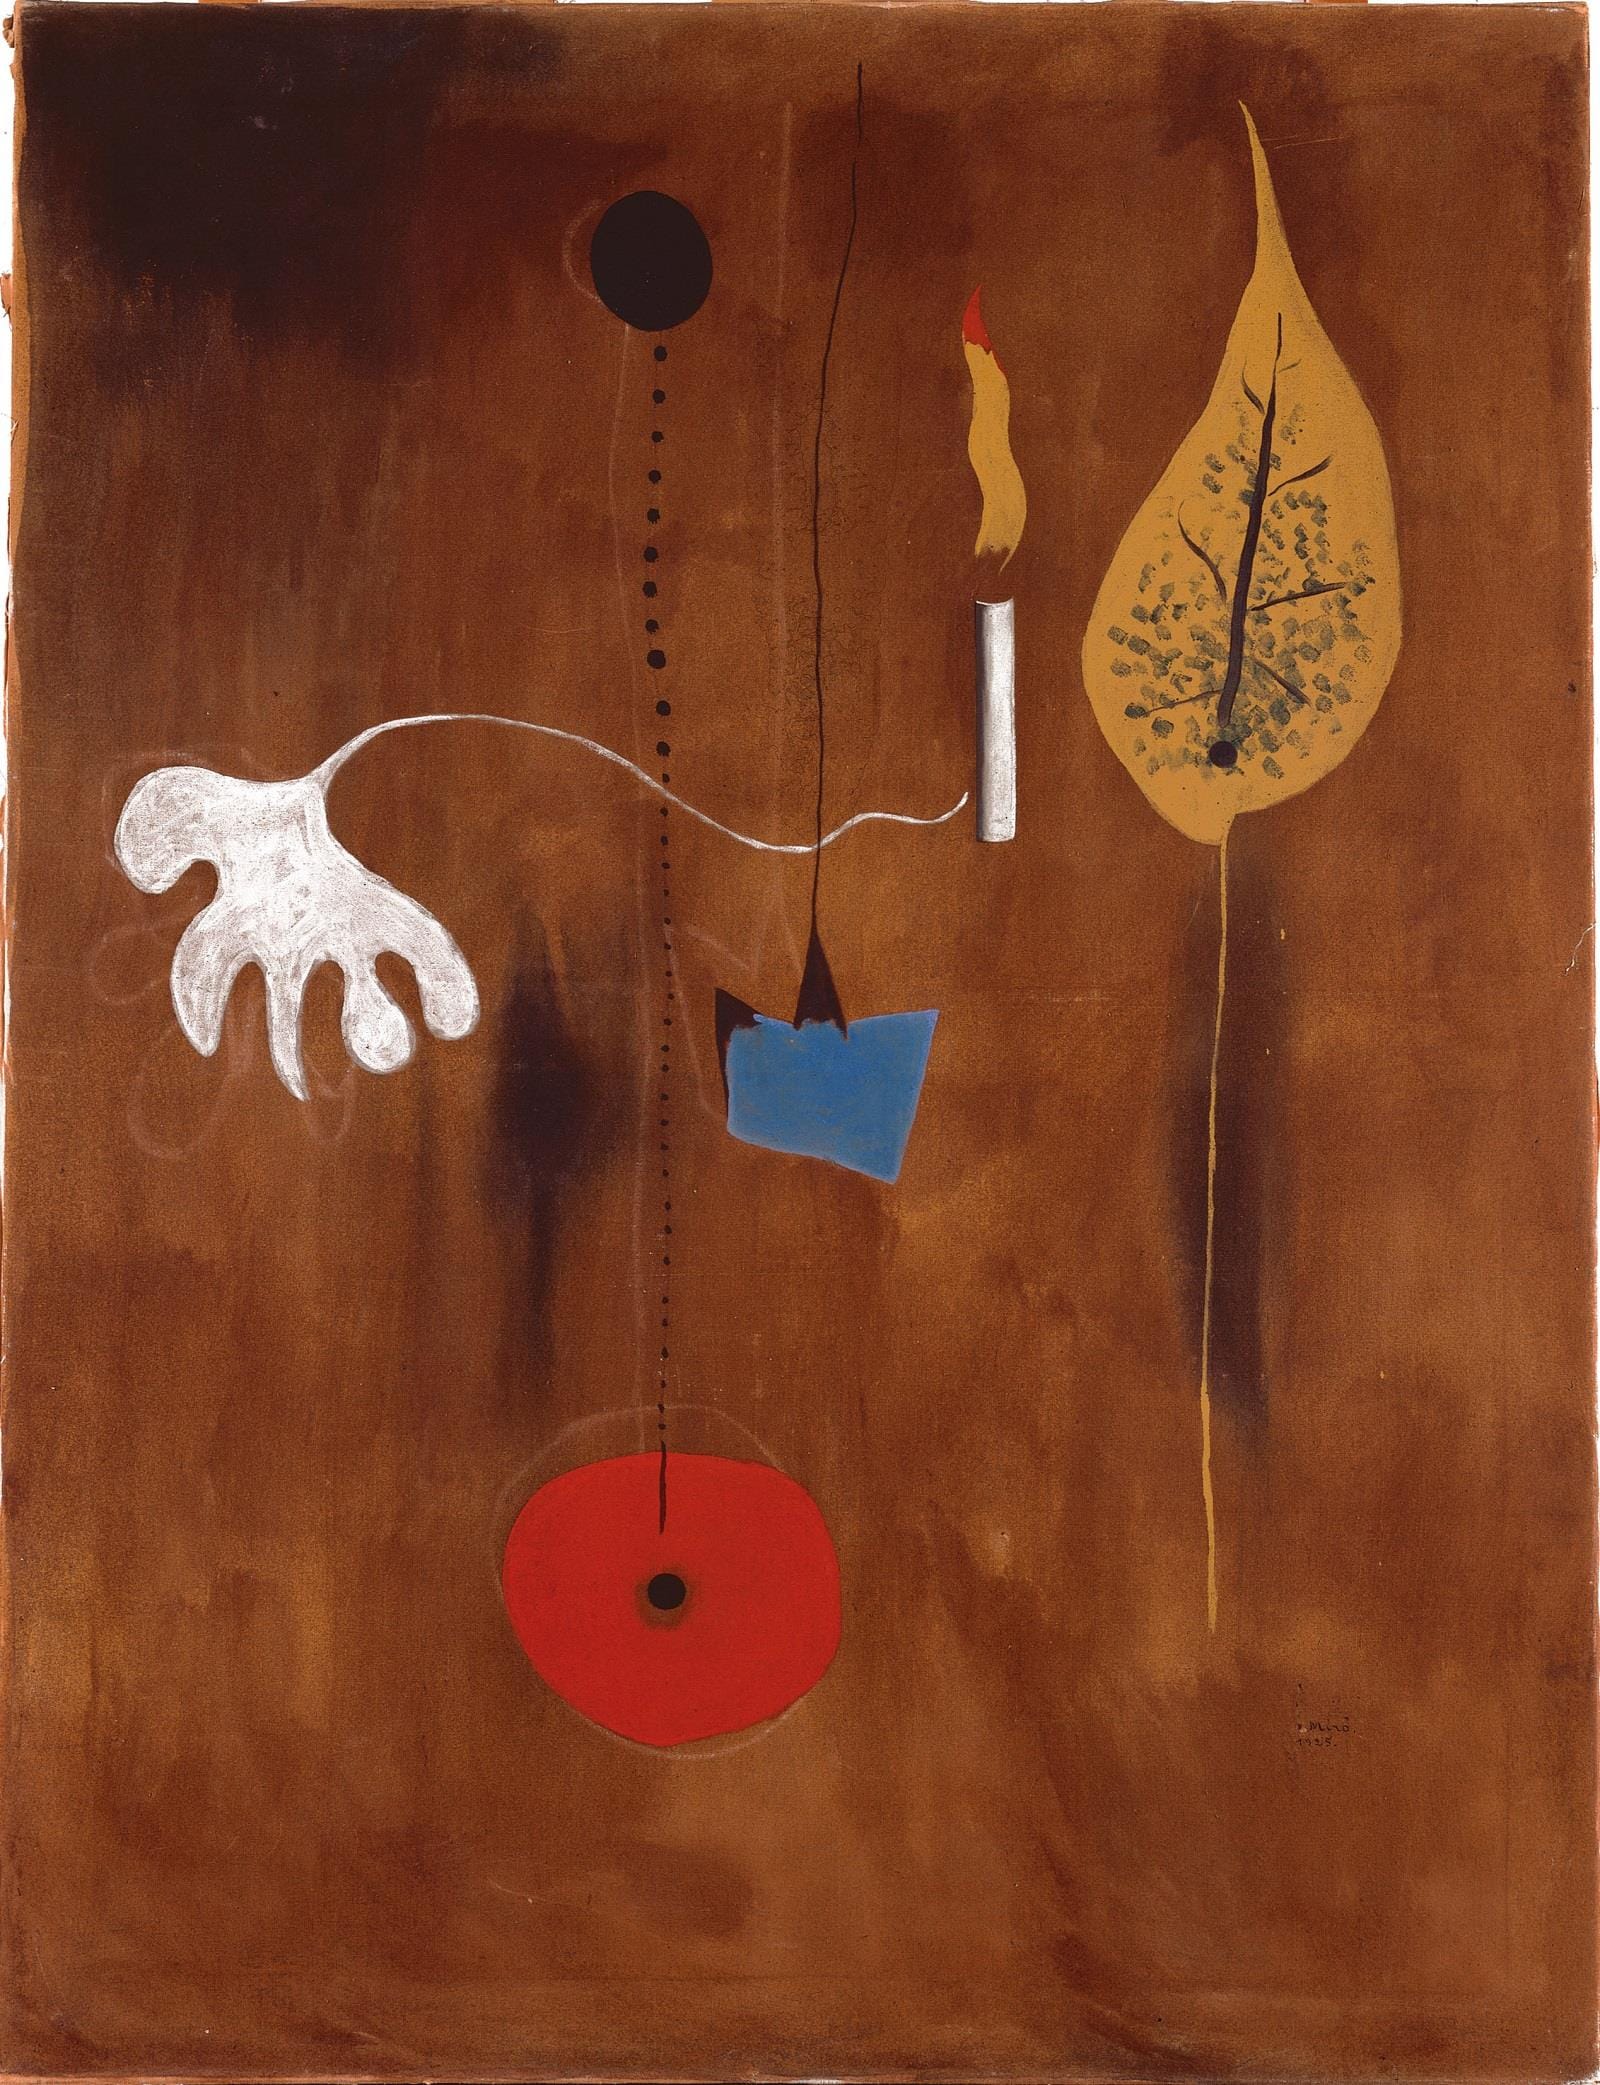 Joan Mirò, Figure à la bougie, 1925, olio su tela, 116,2x 88,5, Berardo Collection Museum, Lisbona